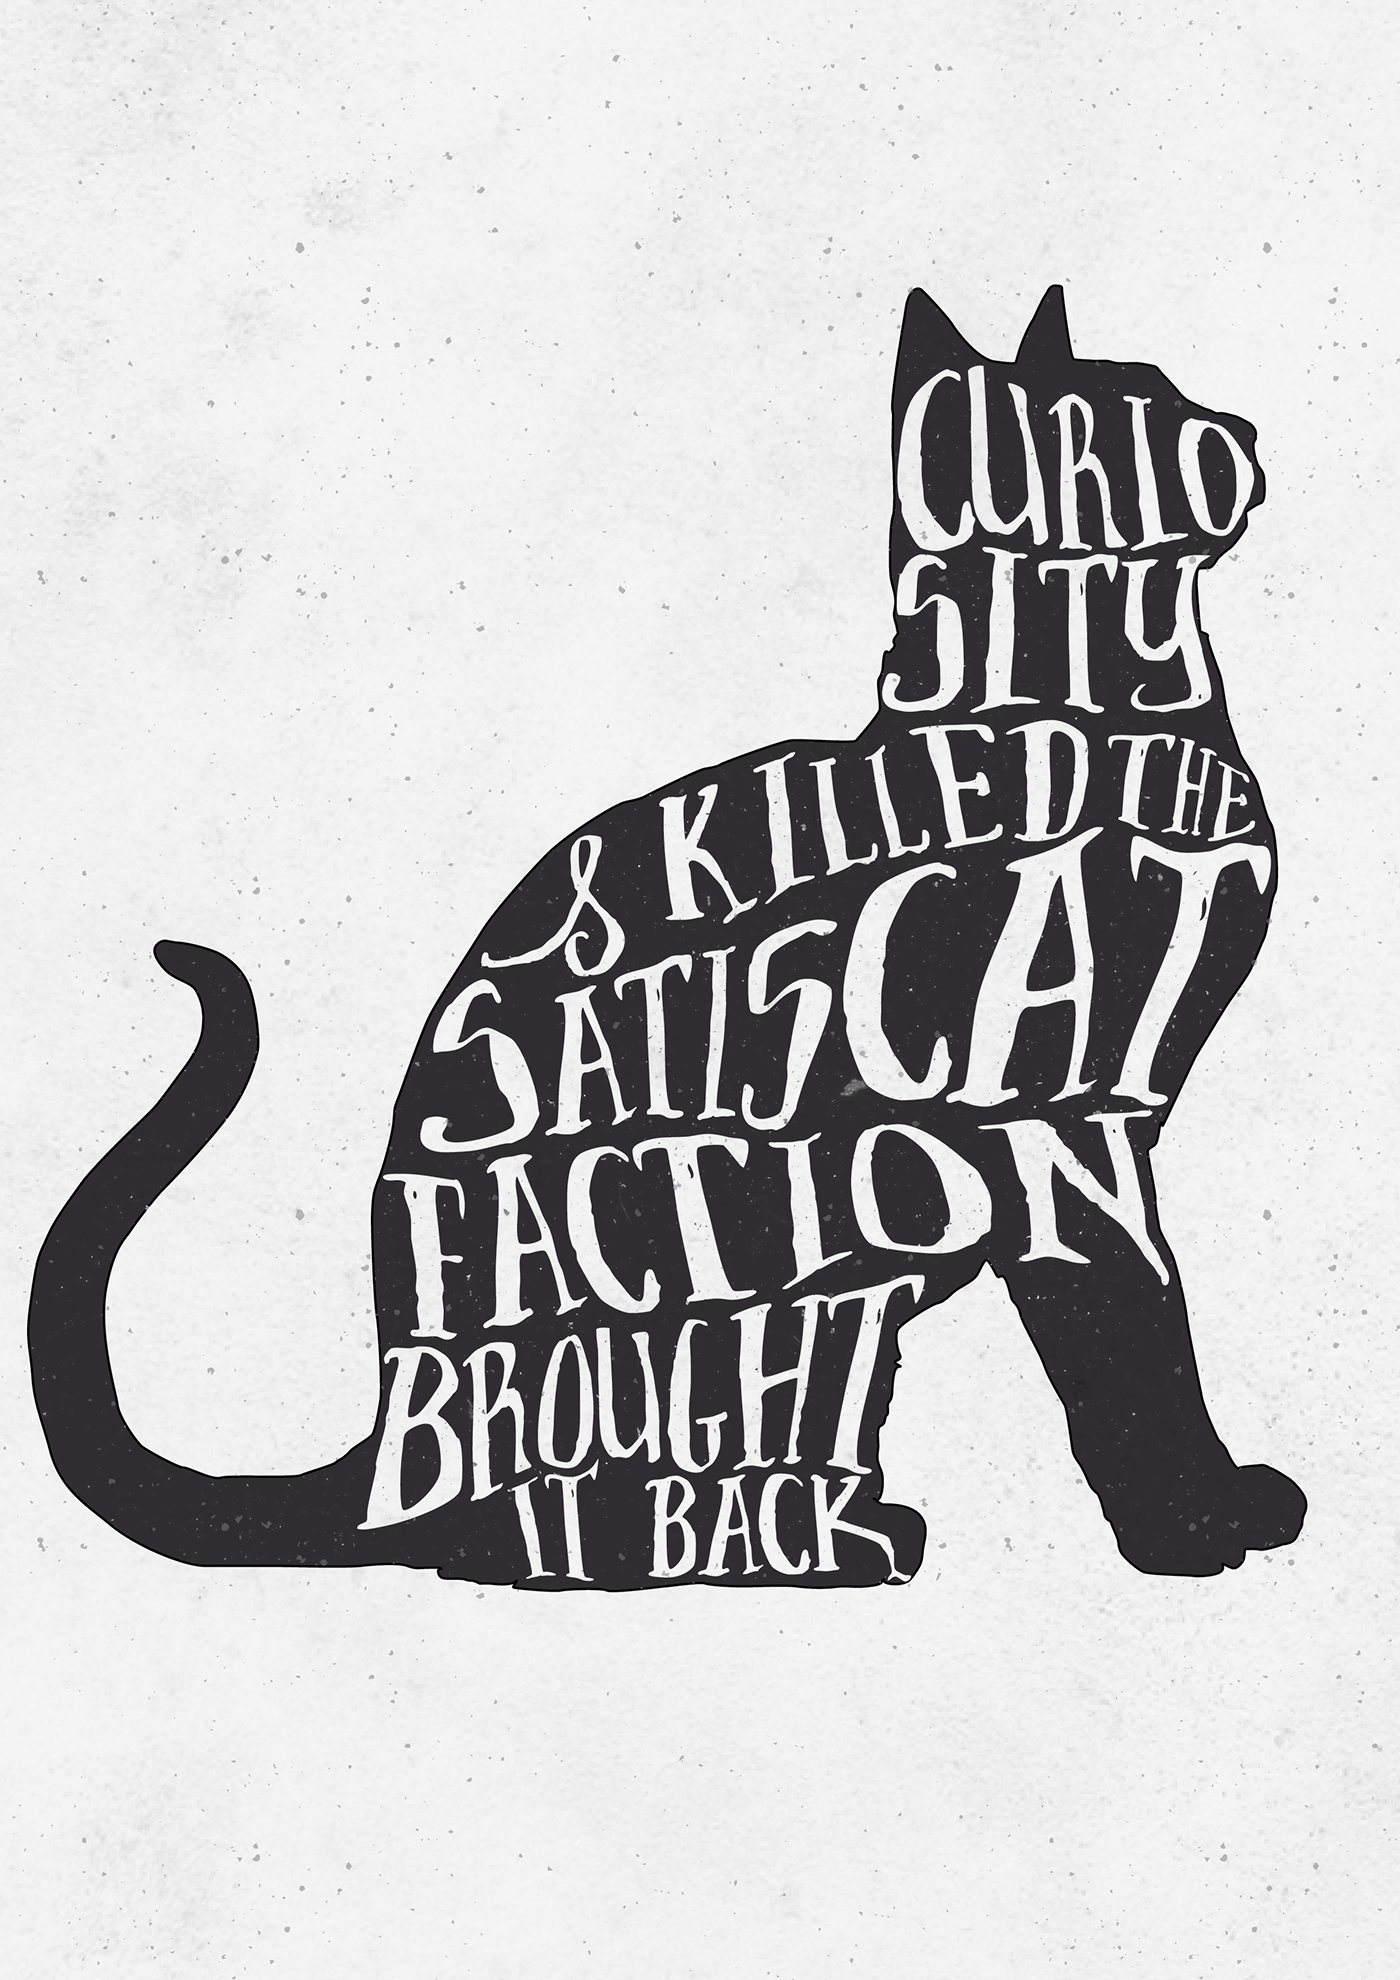 Curiosity Killed the Cat. Kill the Cat Постер. Пословица Curiosity Killed a Cat.. Curiosity Killed the Cat русский эквивалент. Curiosity killed the